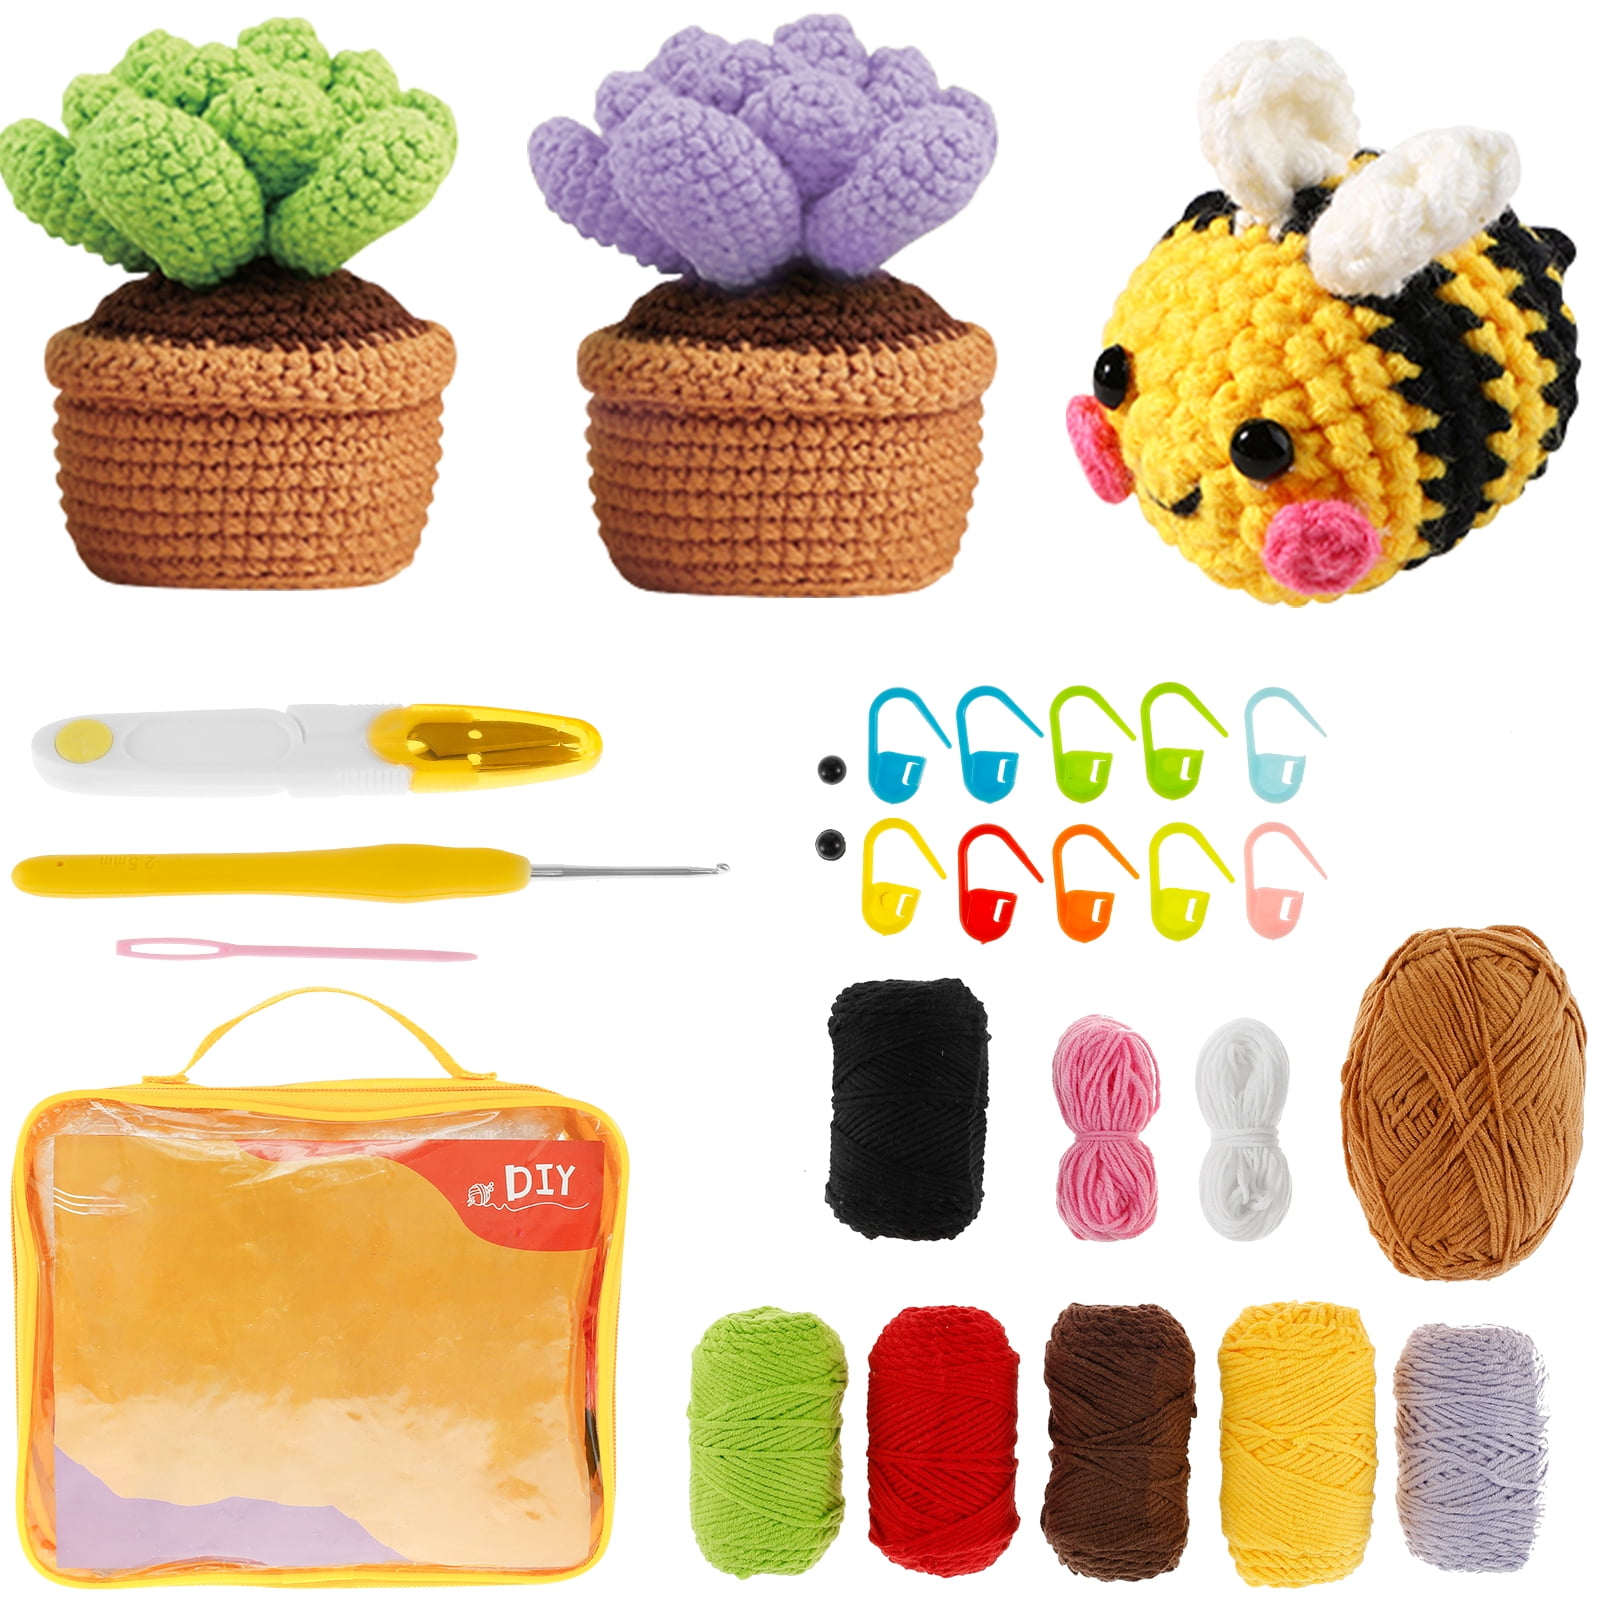 Clover Knitting & Crochet Kits